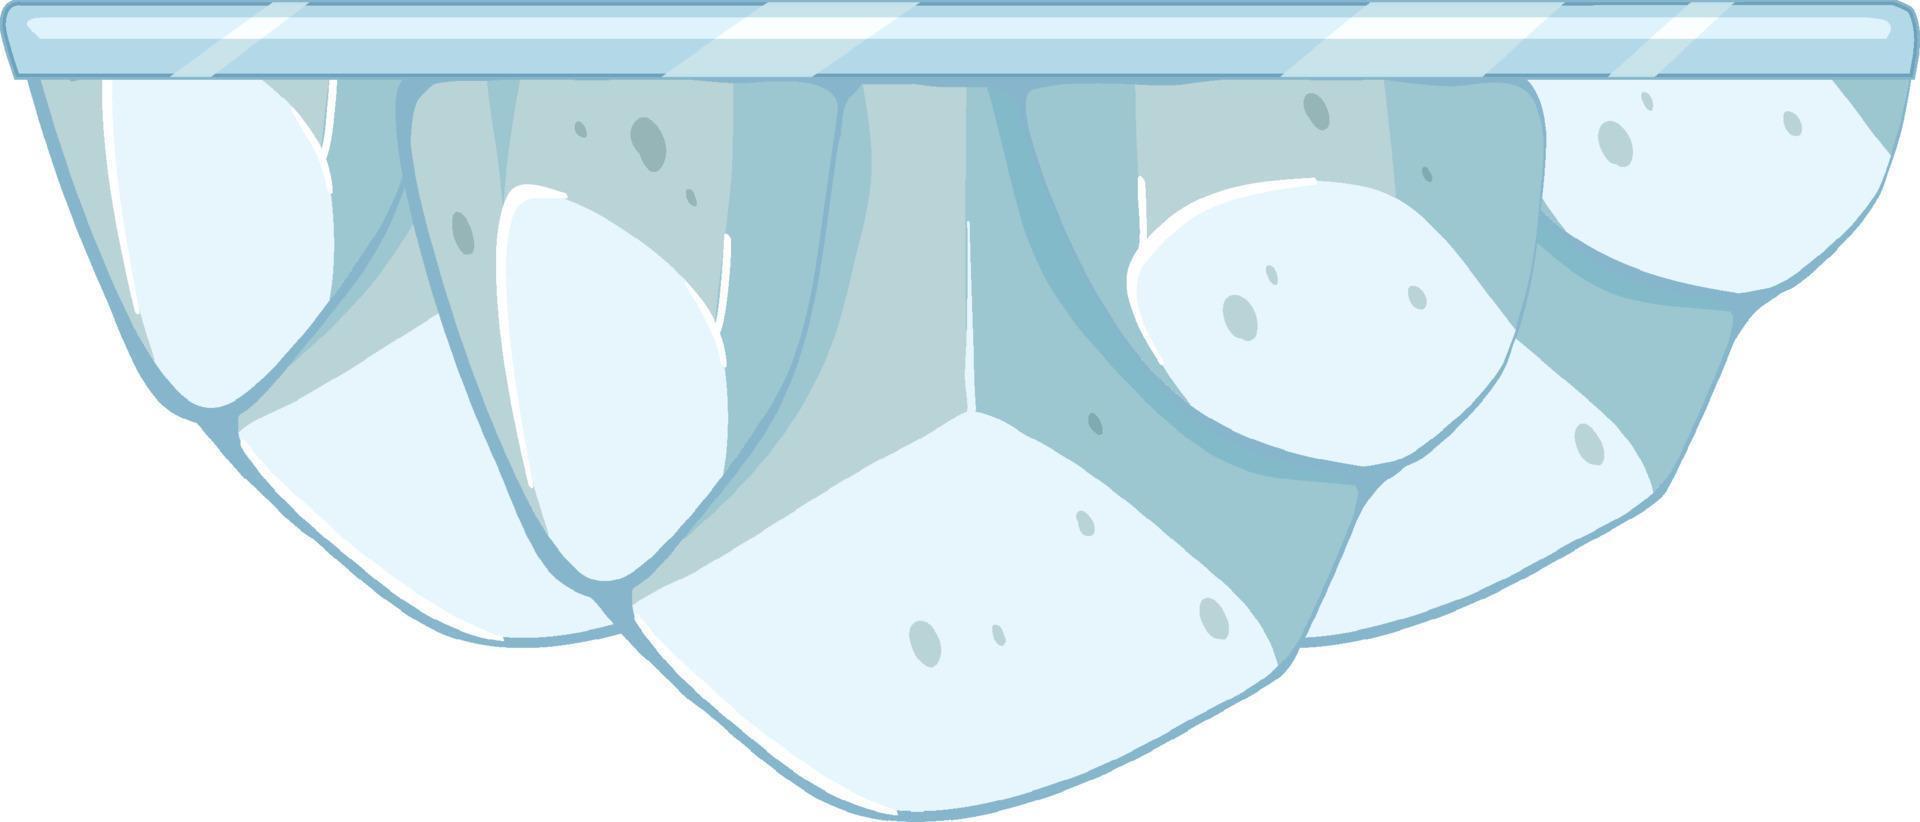 Eiszapfen im Cartoon-Stil isoliert vektor